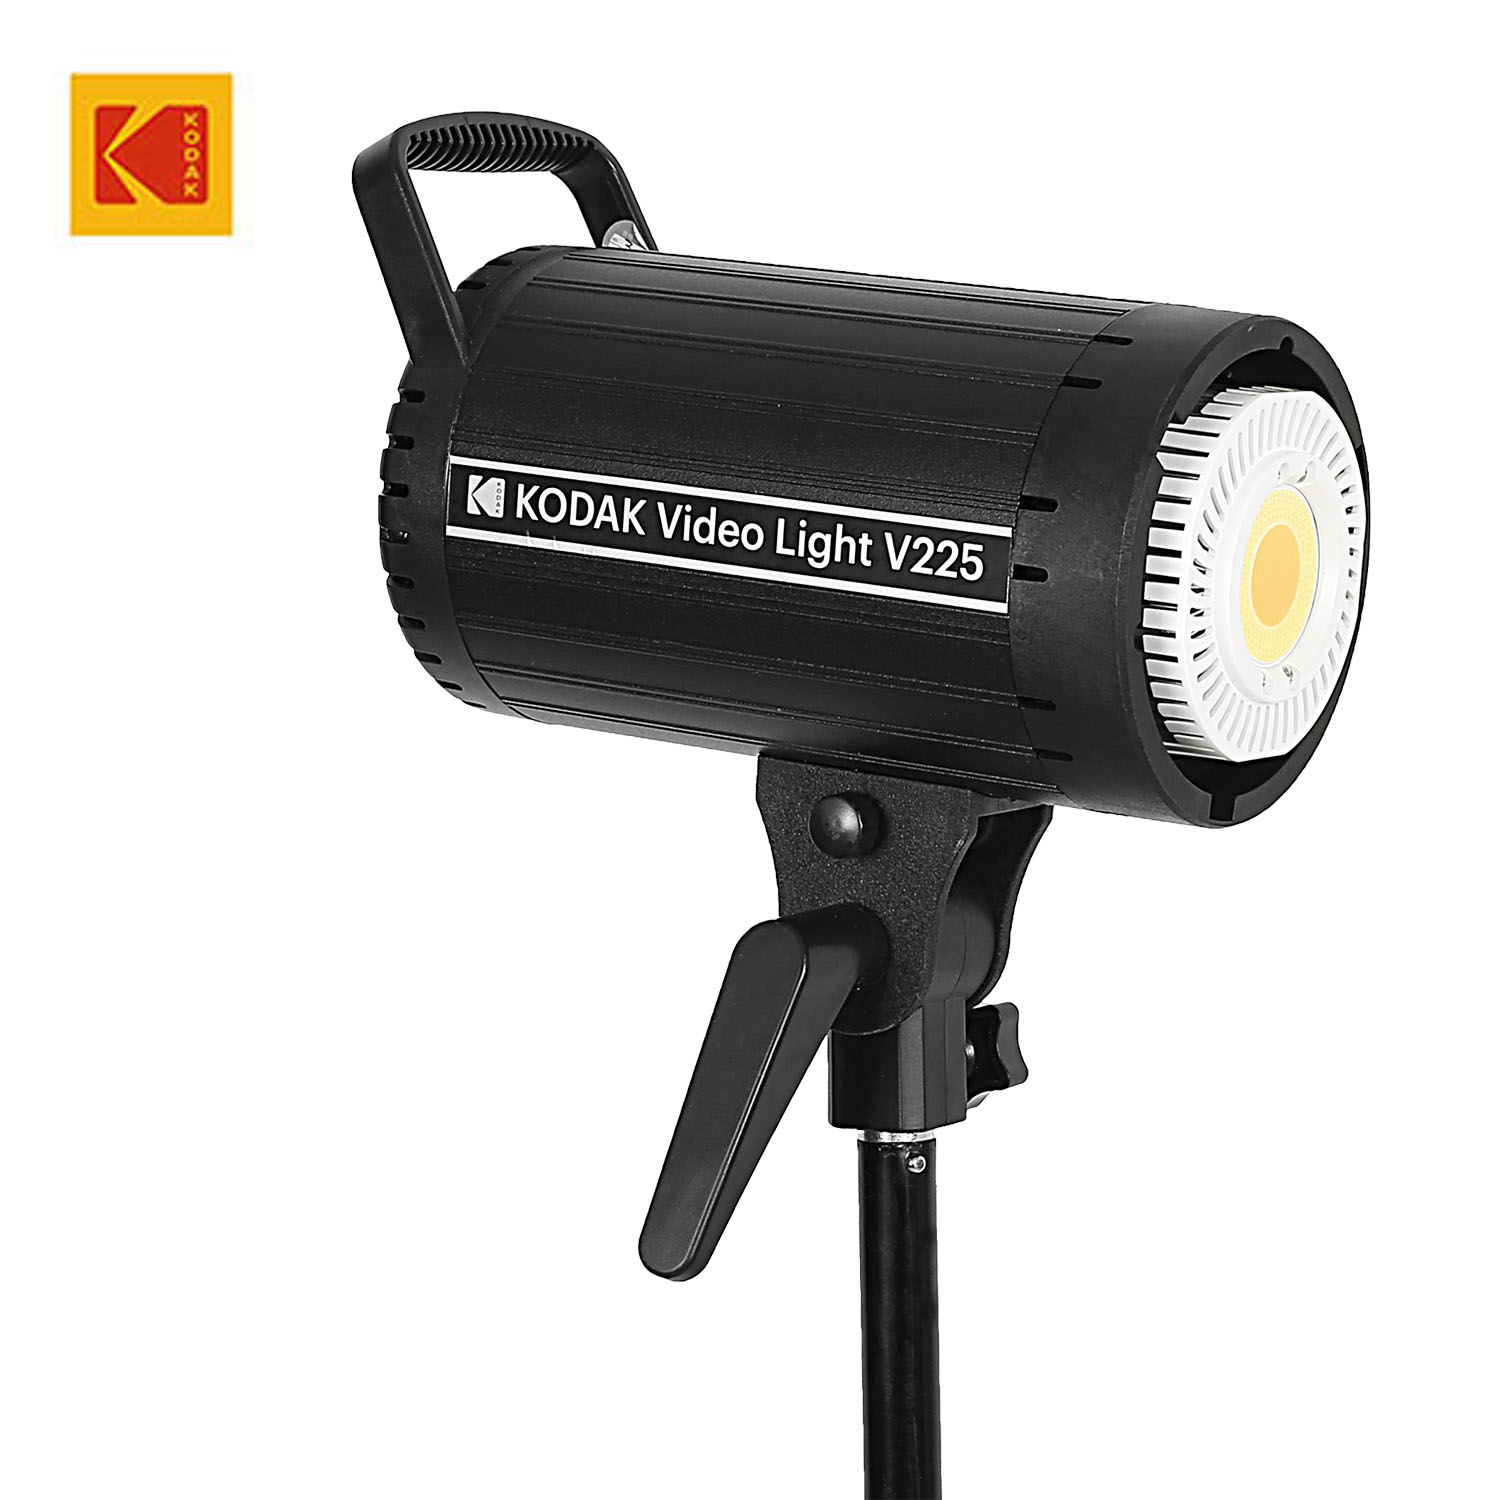 KODAK Video Light V225